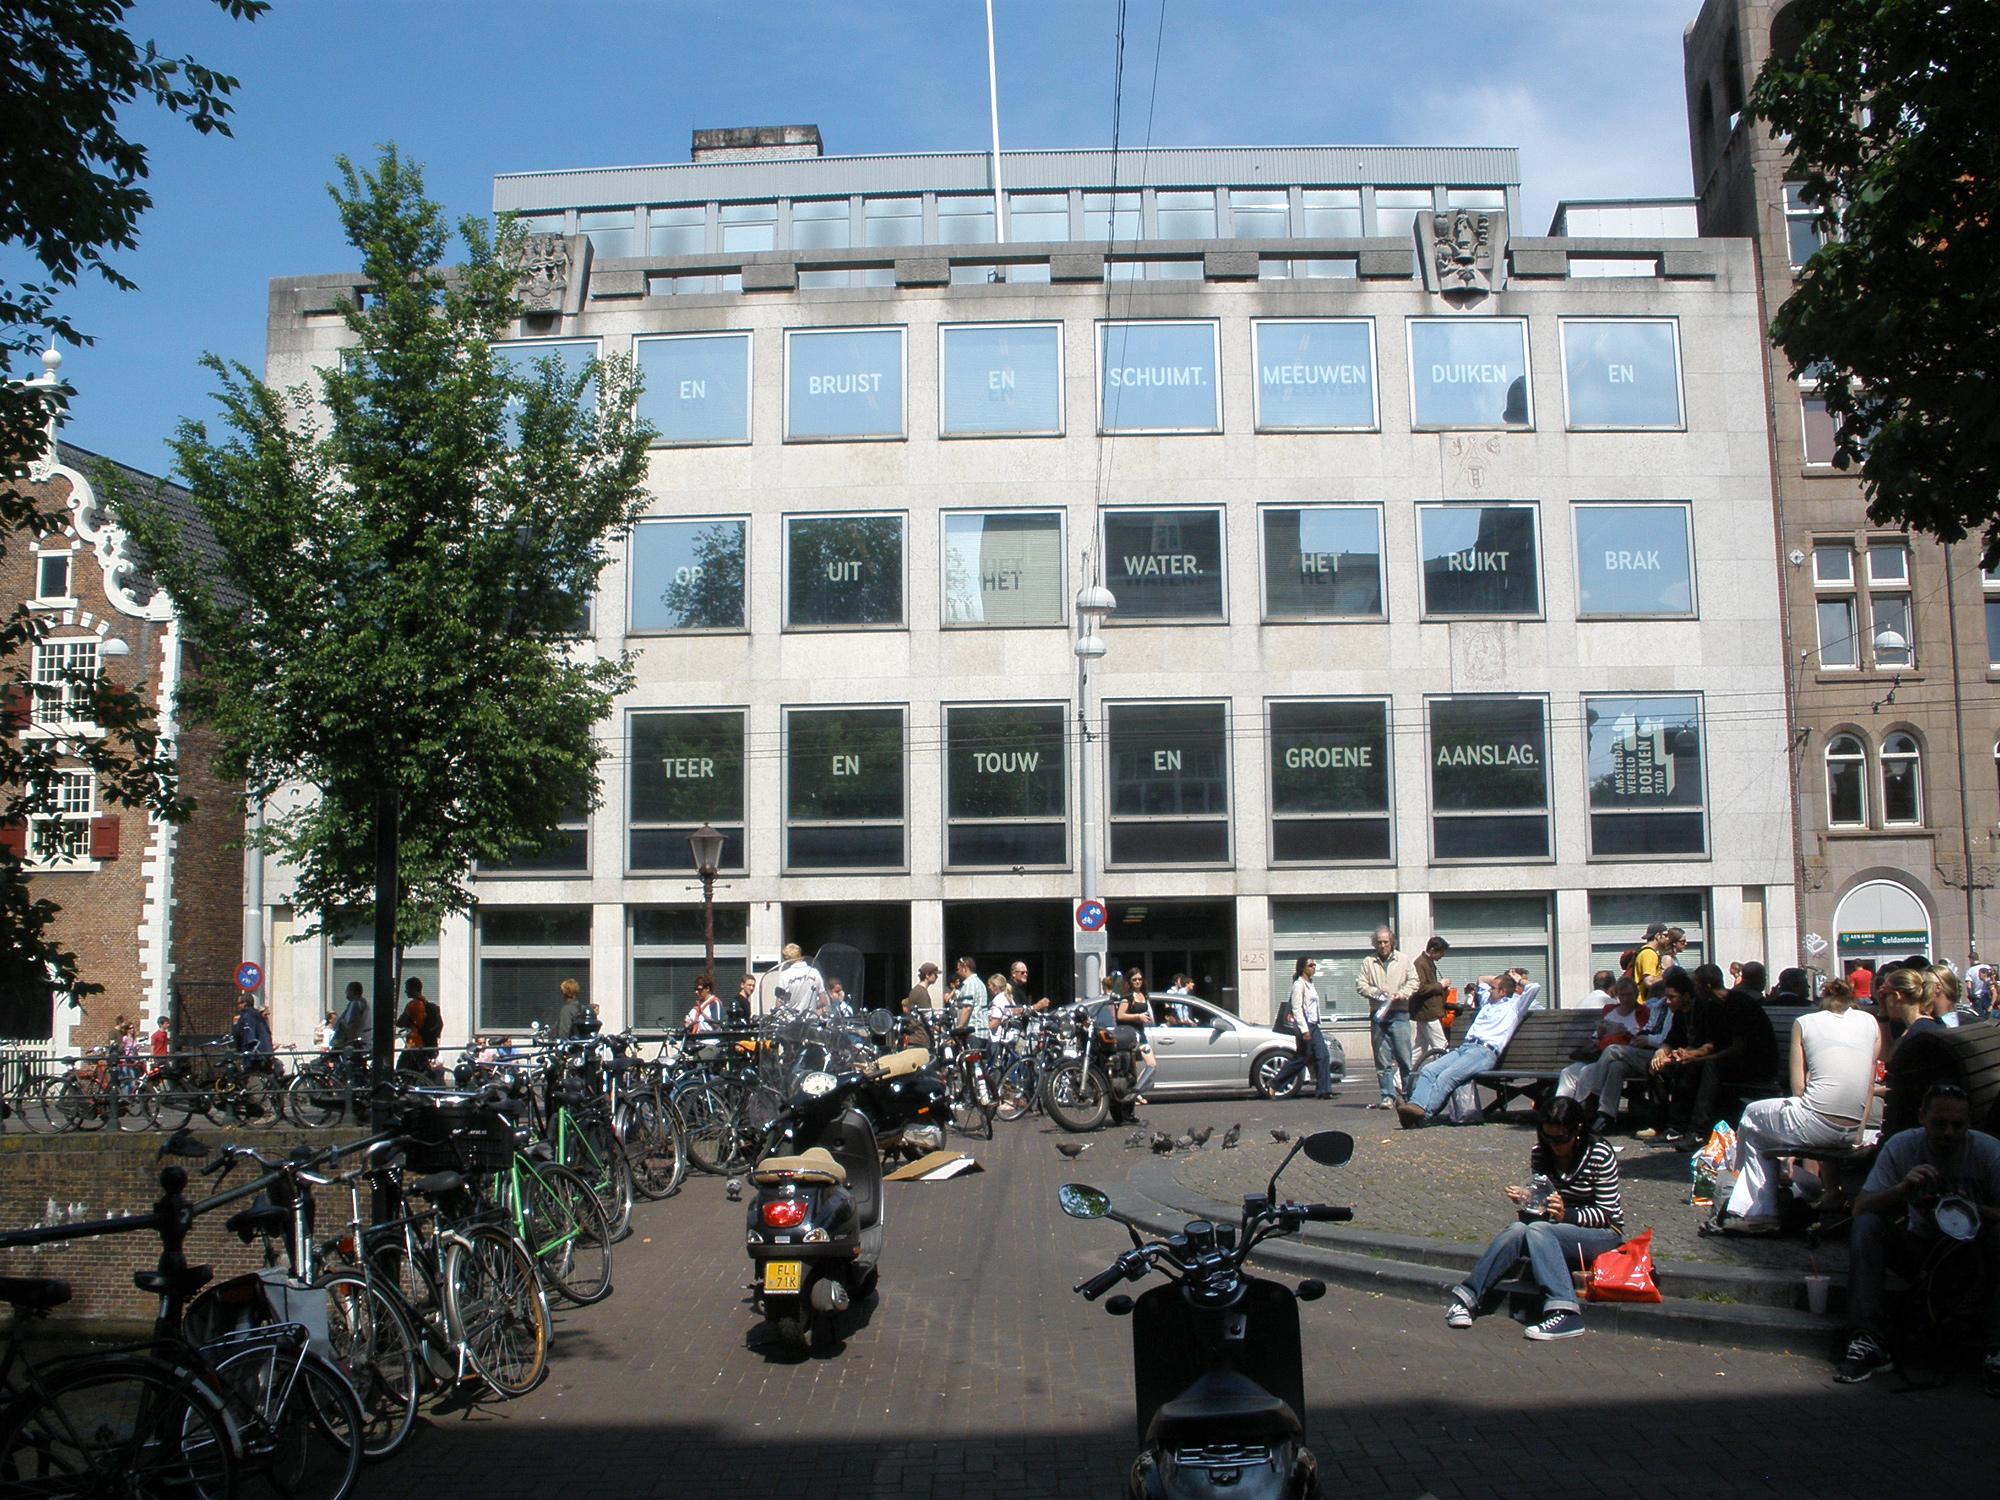 Άμστερνταμ - Πανεπιστήμιο του Άμστερνταμ2b9